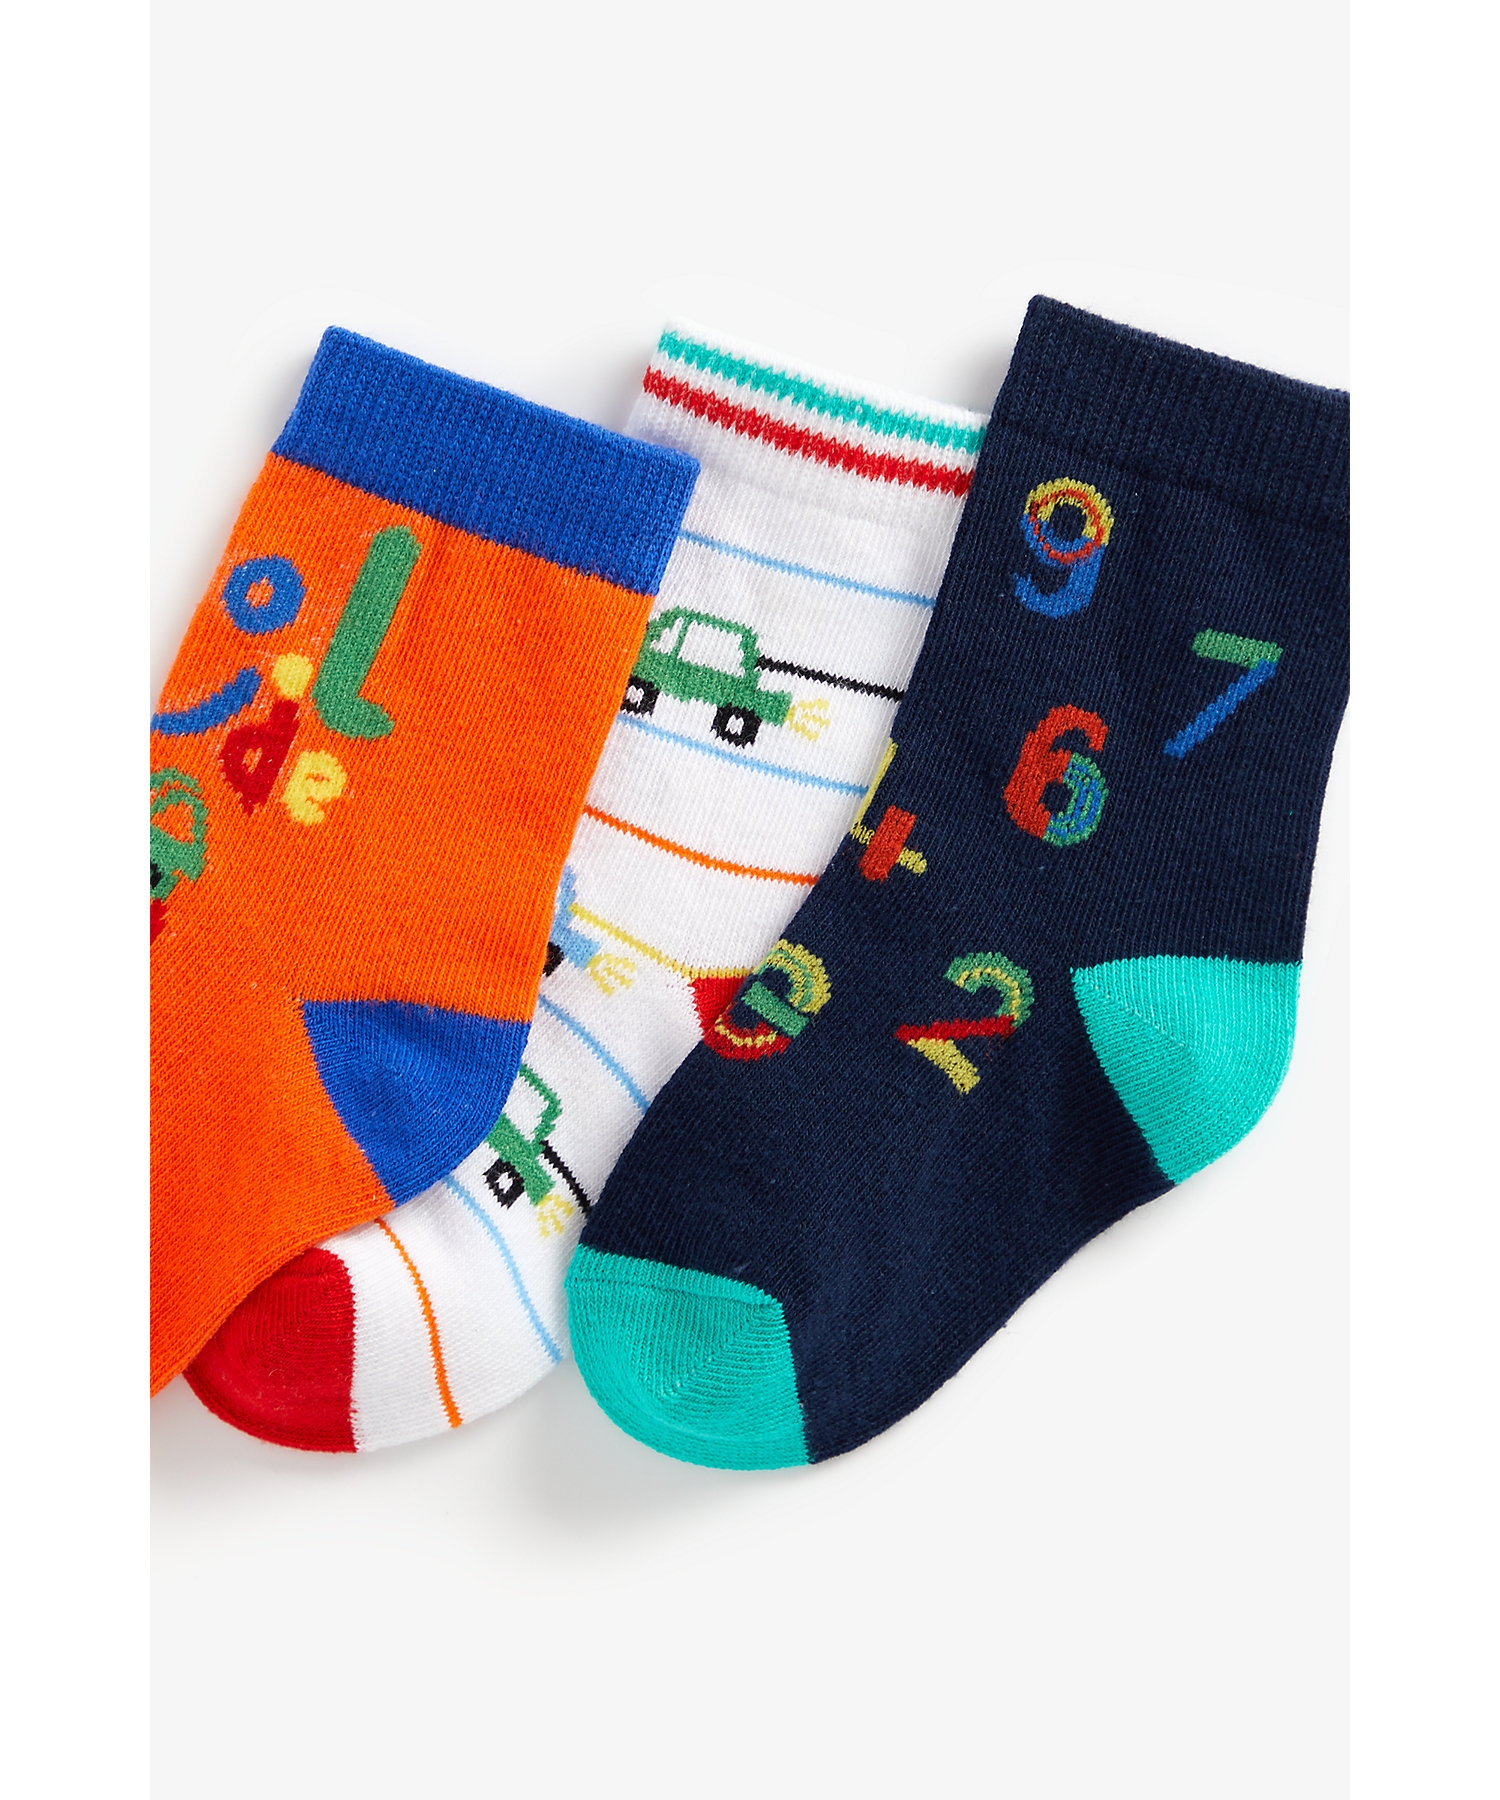 Boys Socks -Pack of 3-Multicolor